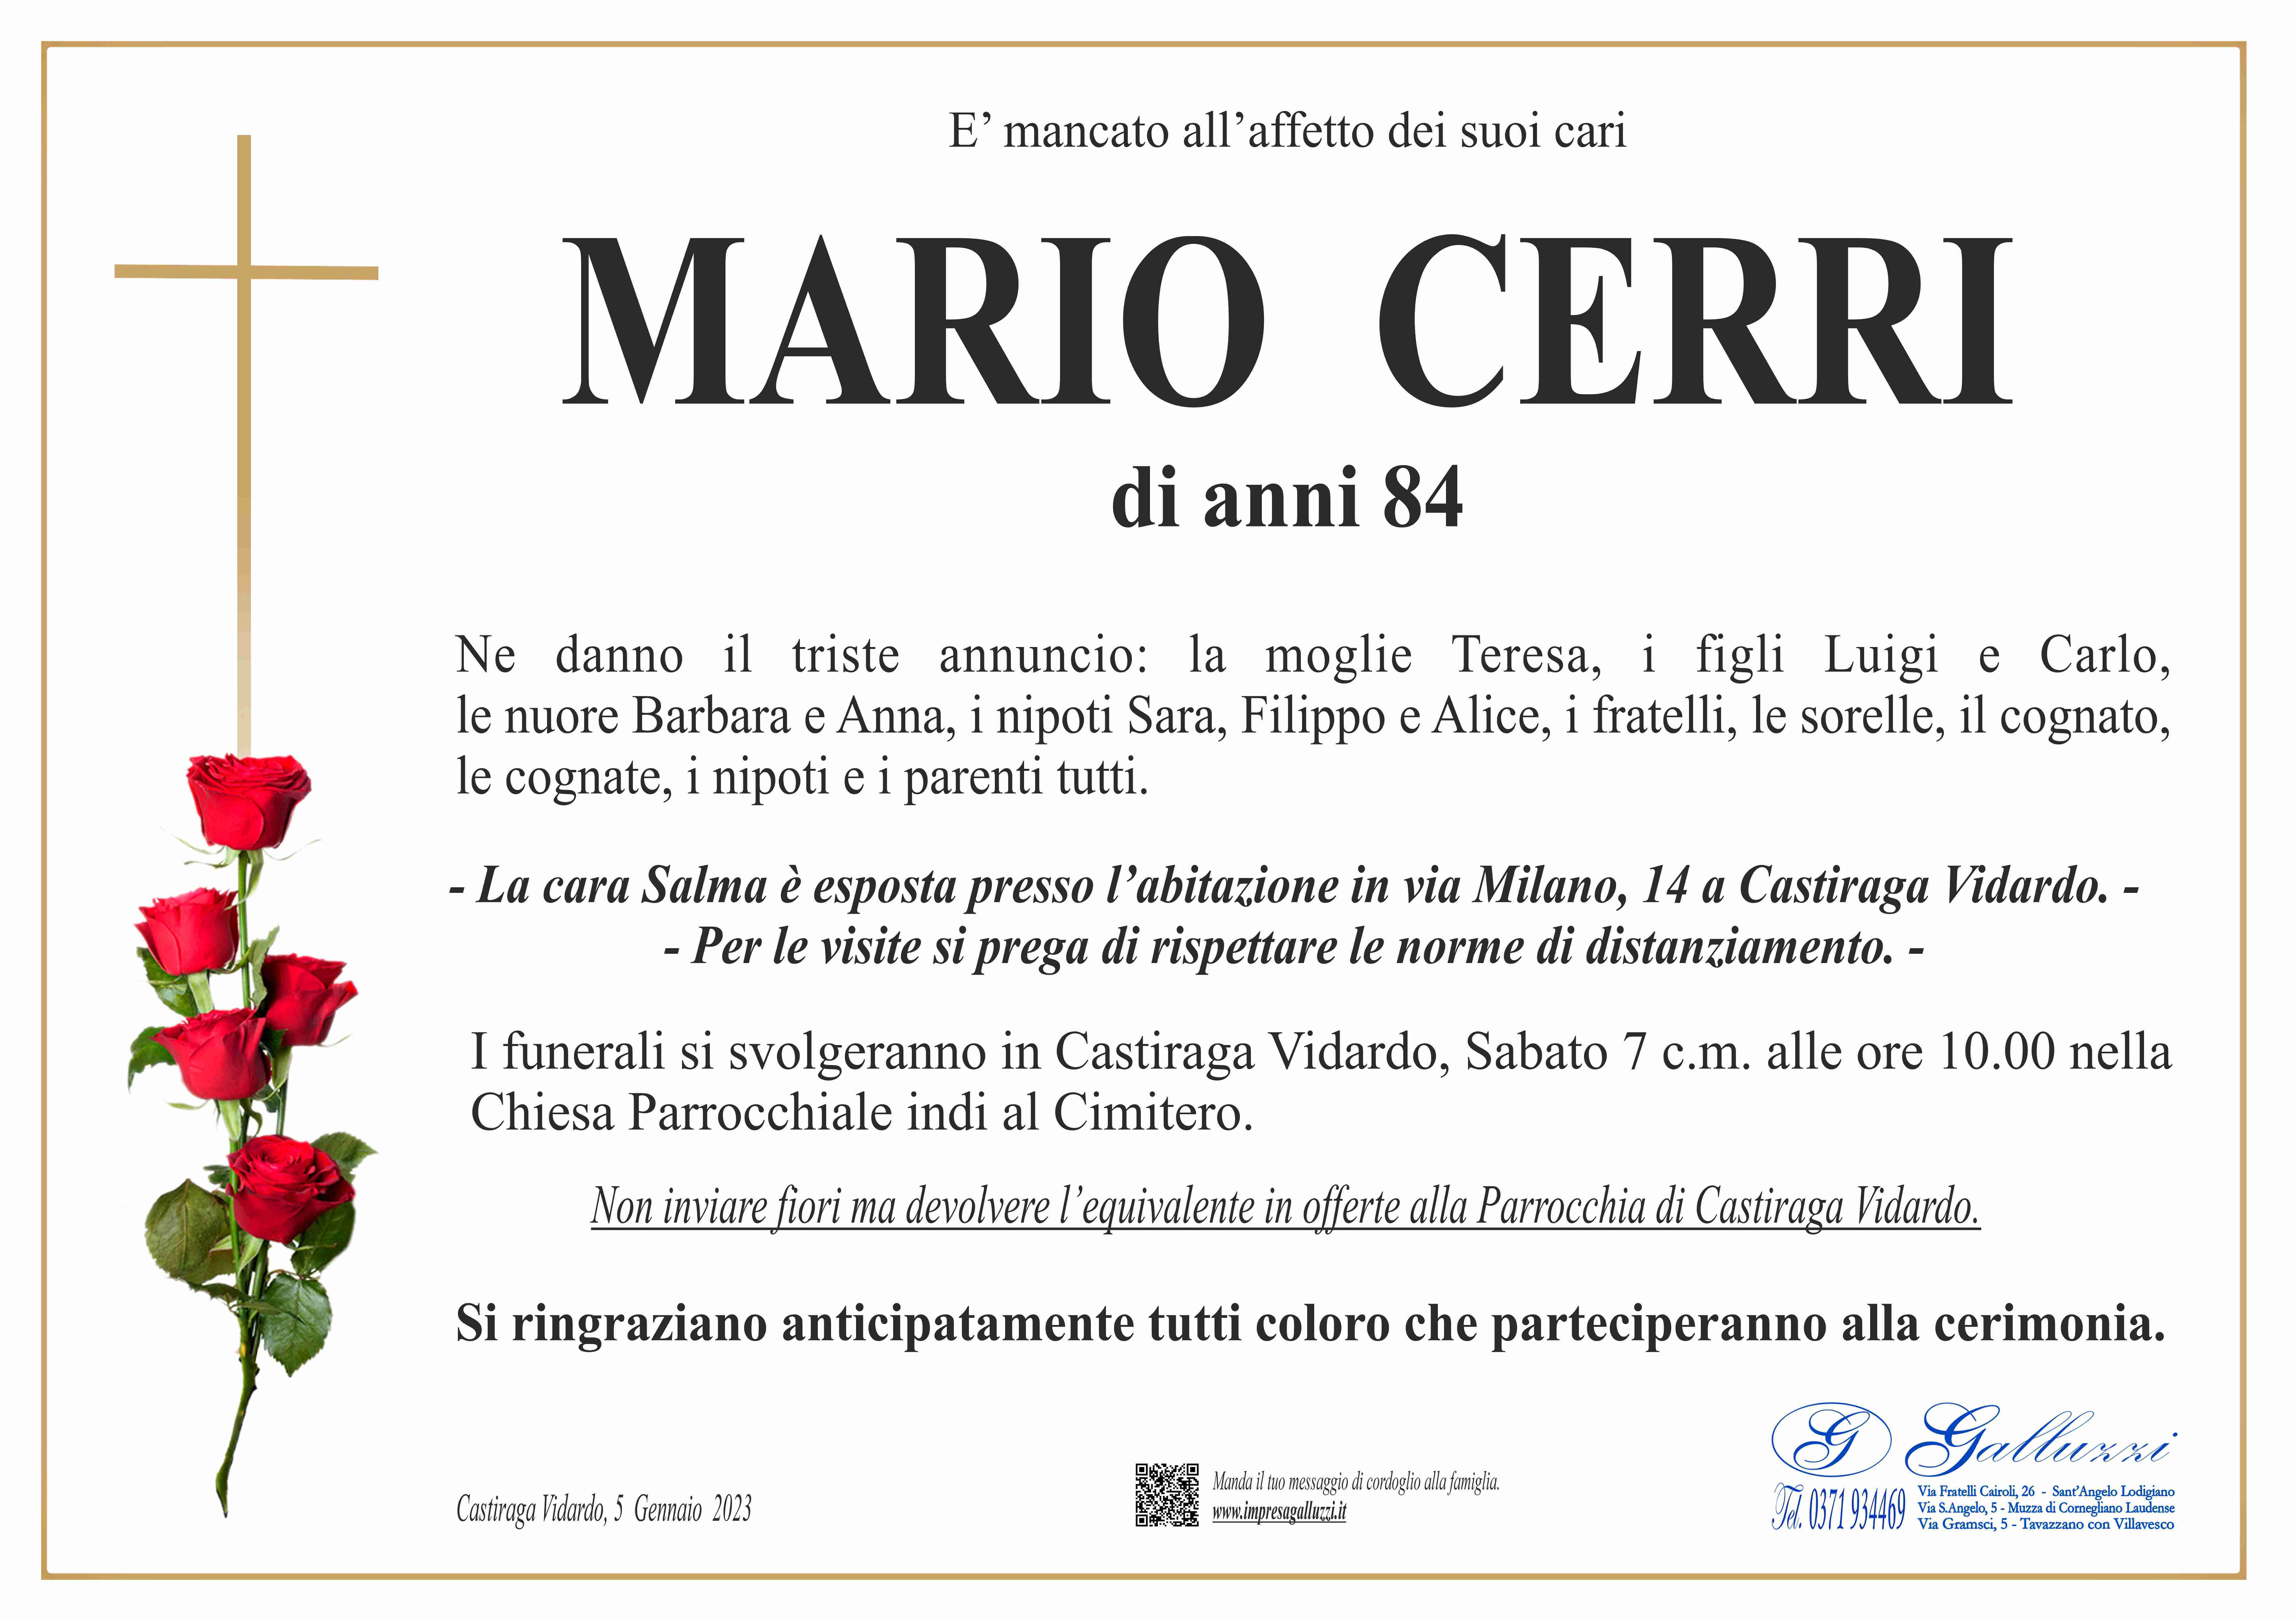 Mario Cerri